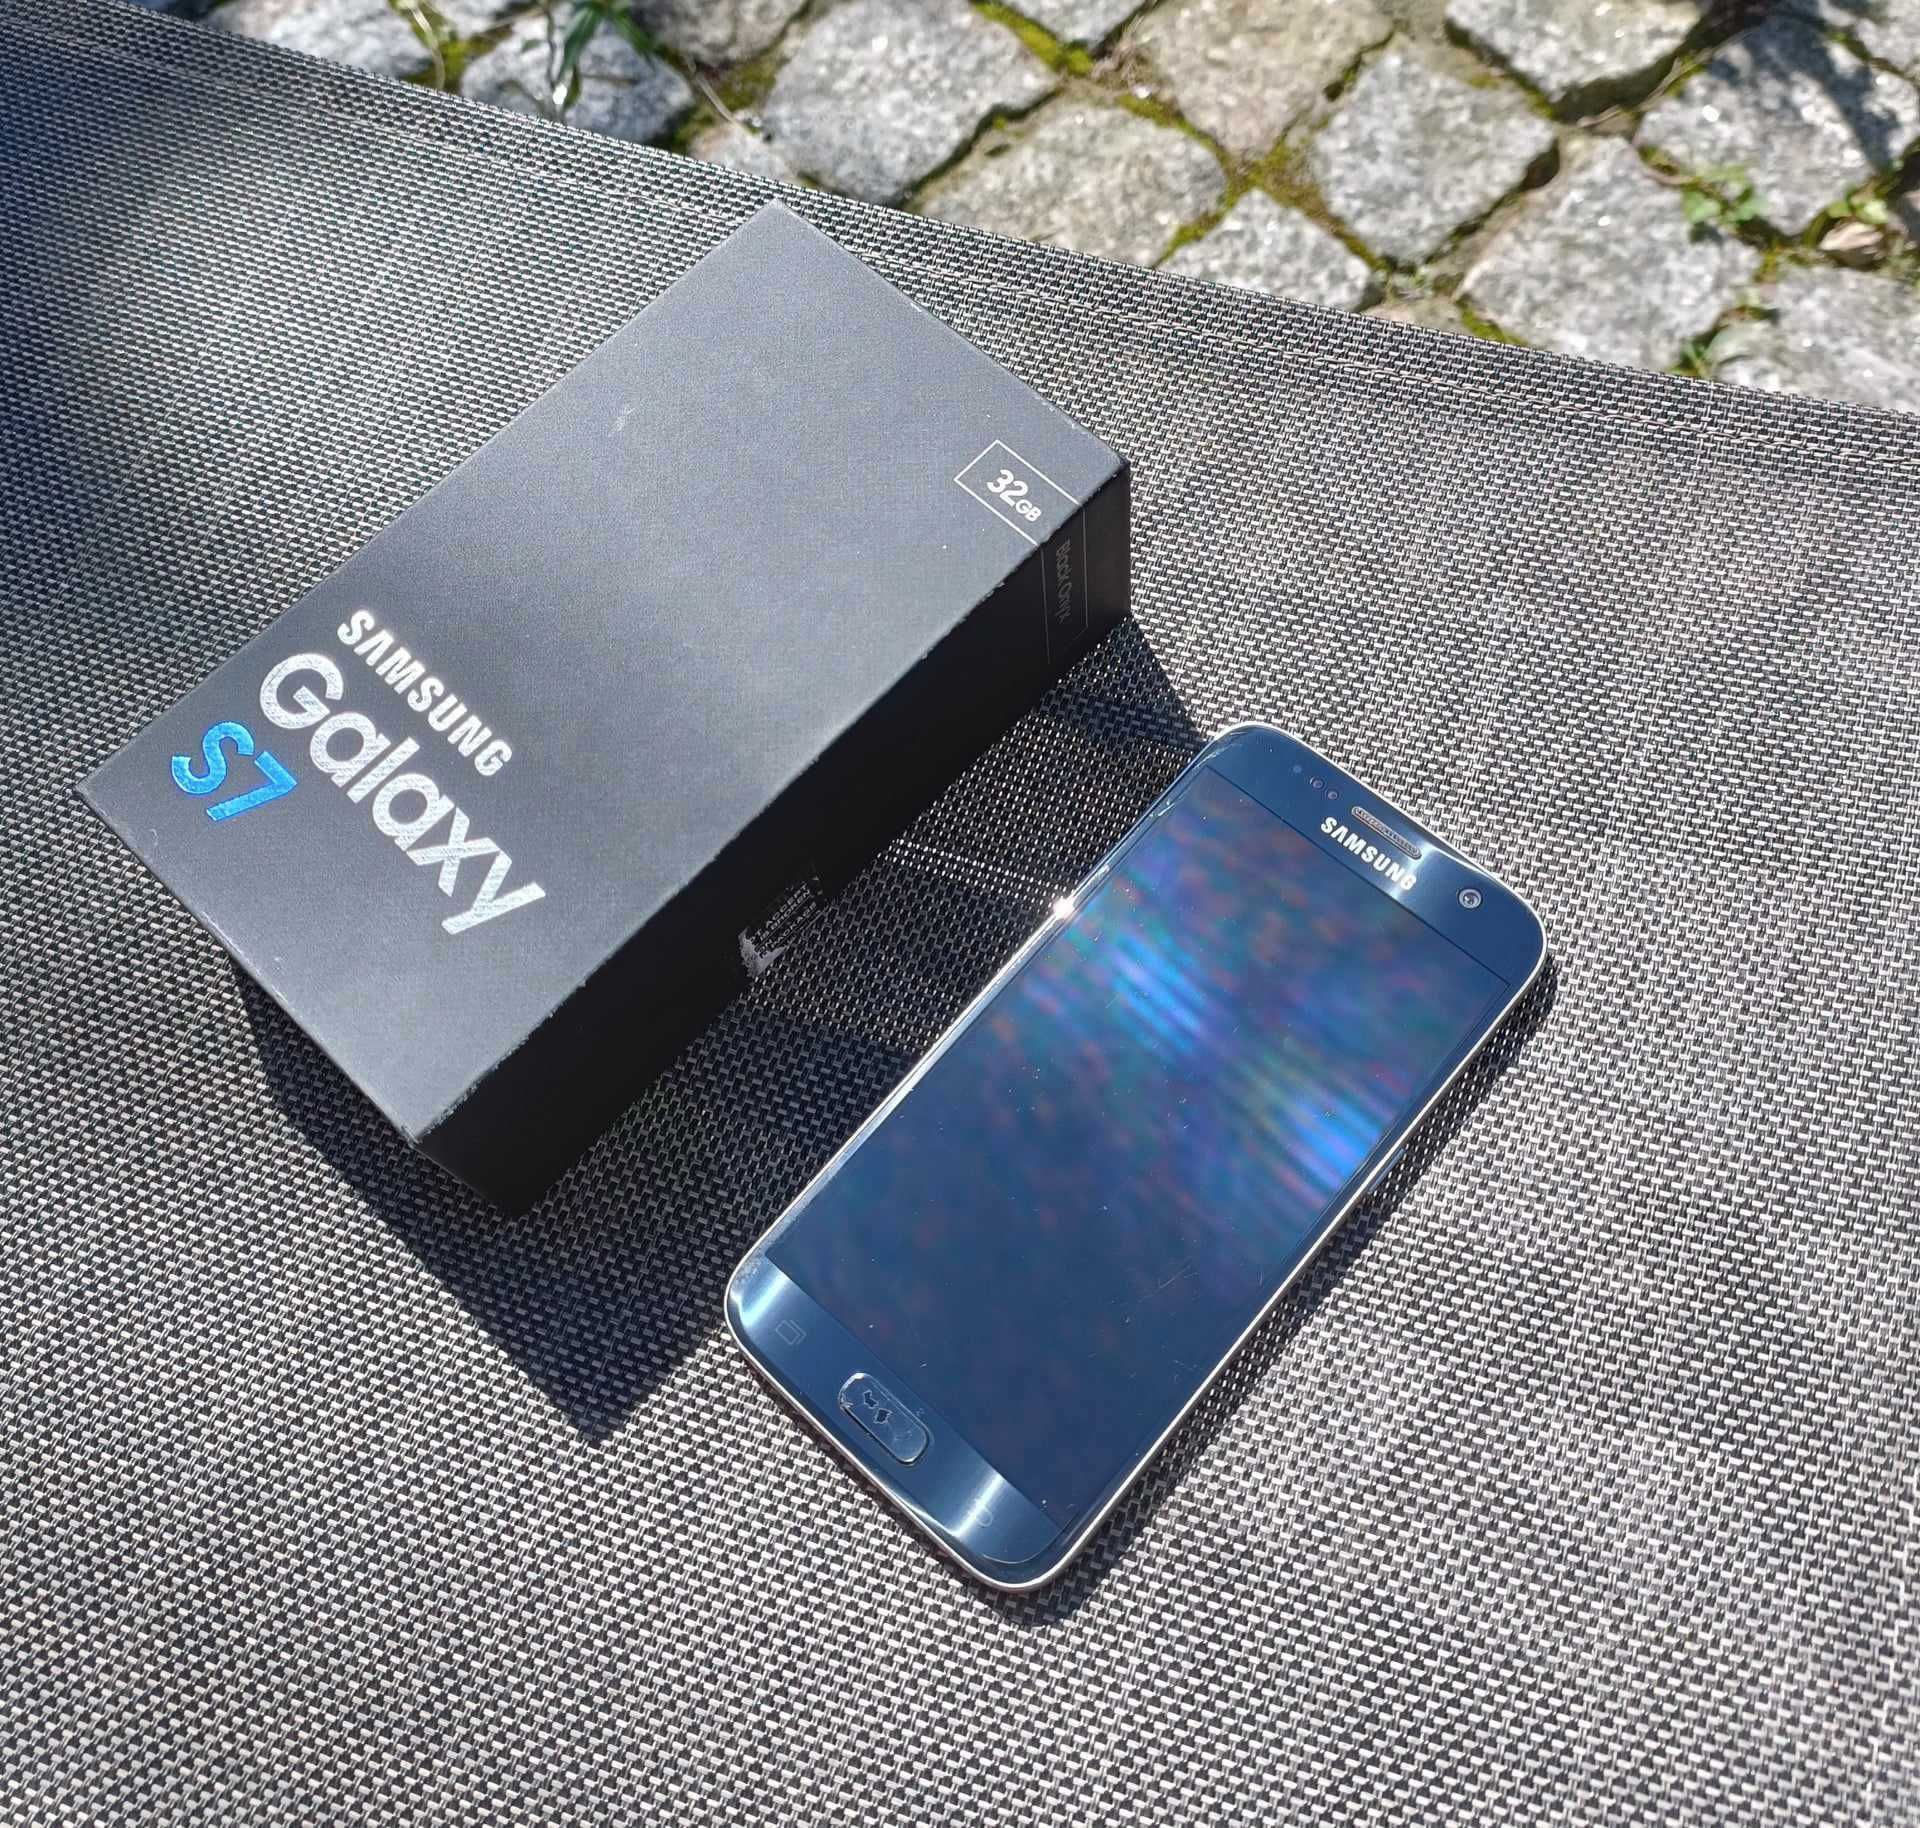 Samsung Galaxy S7 wodoszczelny tanio sprzedam